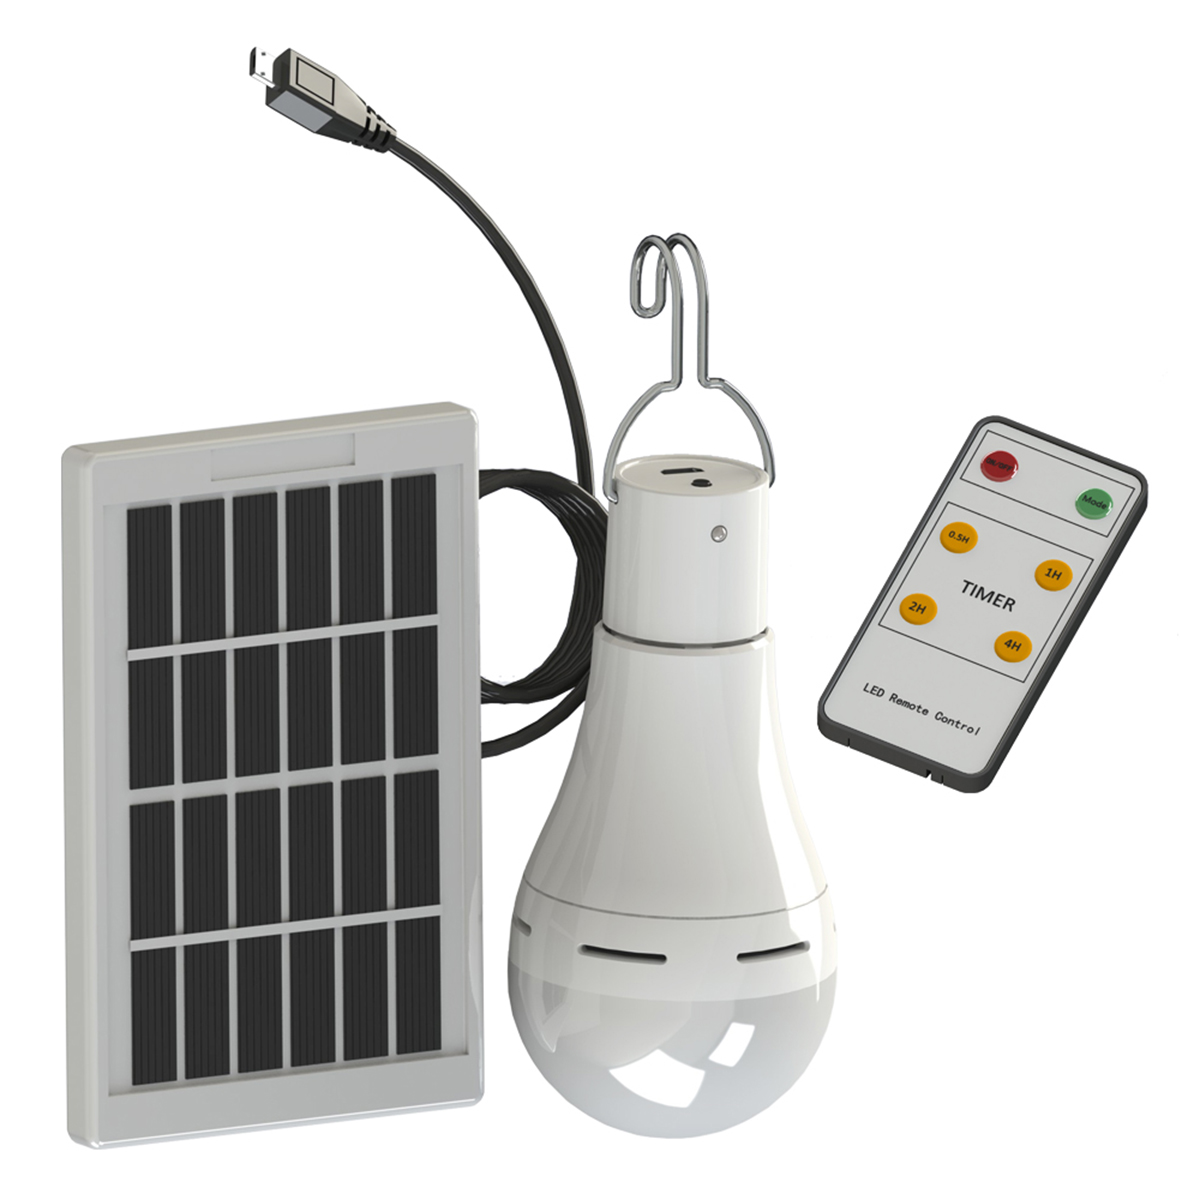 

15 Вт Солнечная Питание USB Аккумуляторная Кемпинг Лампа 5-режимная, Вт / Солнечная Панель, 3 м, кабель и Дистанционный